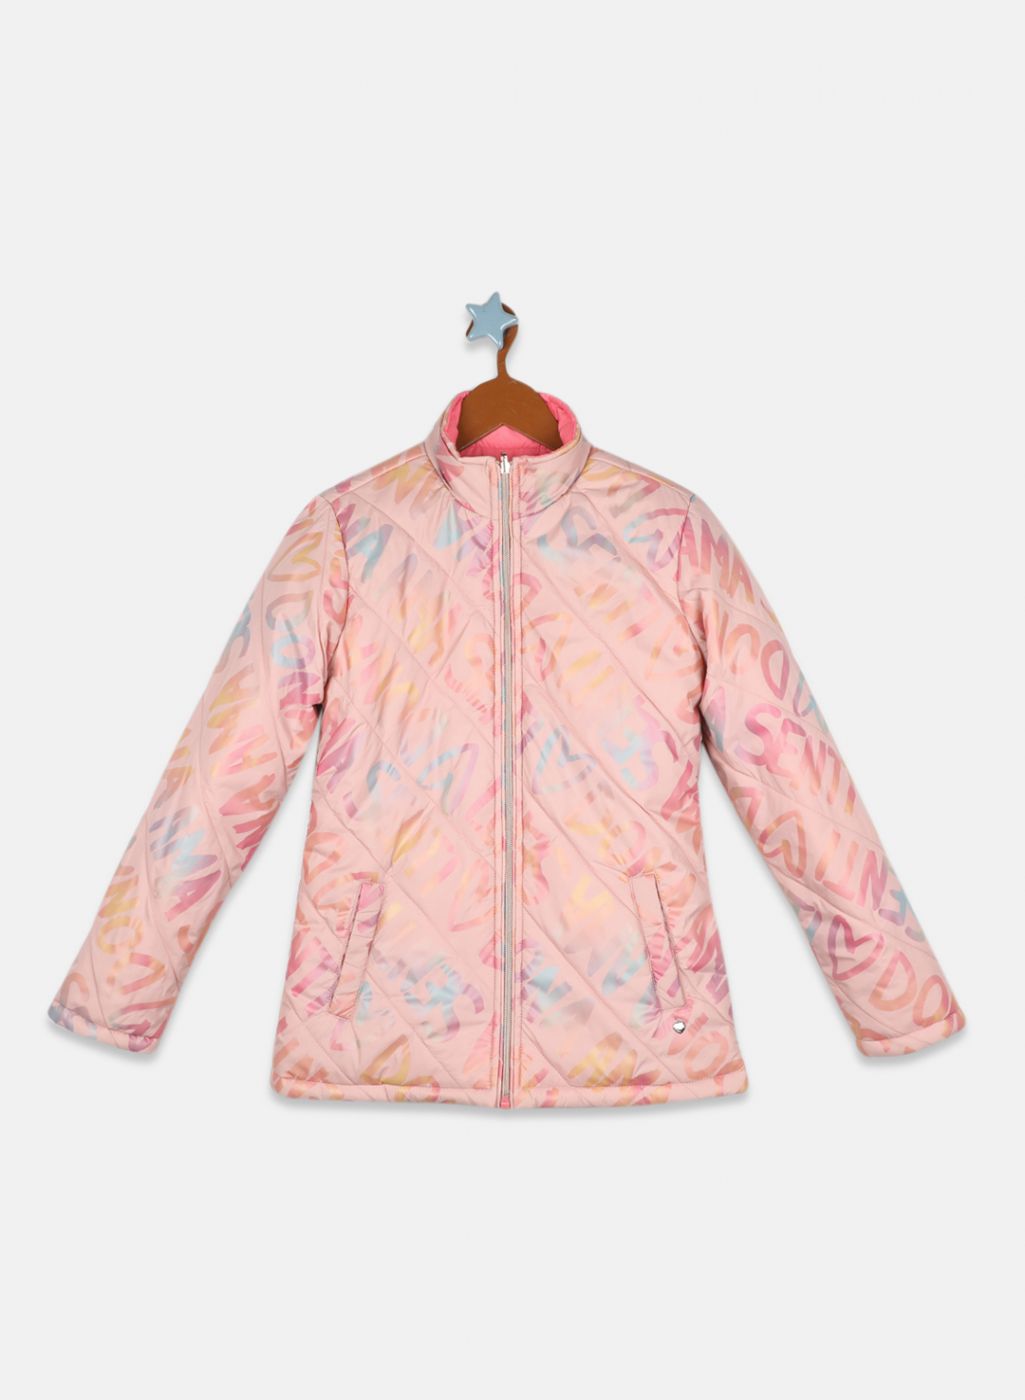 Girls Pink Printed Jacket